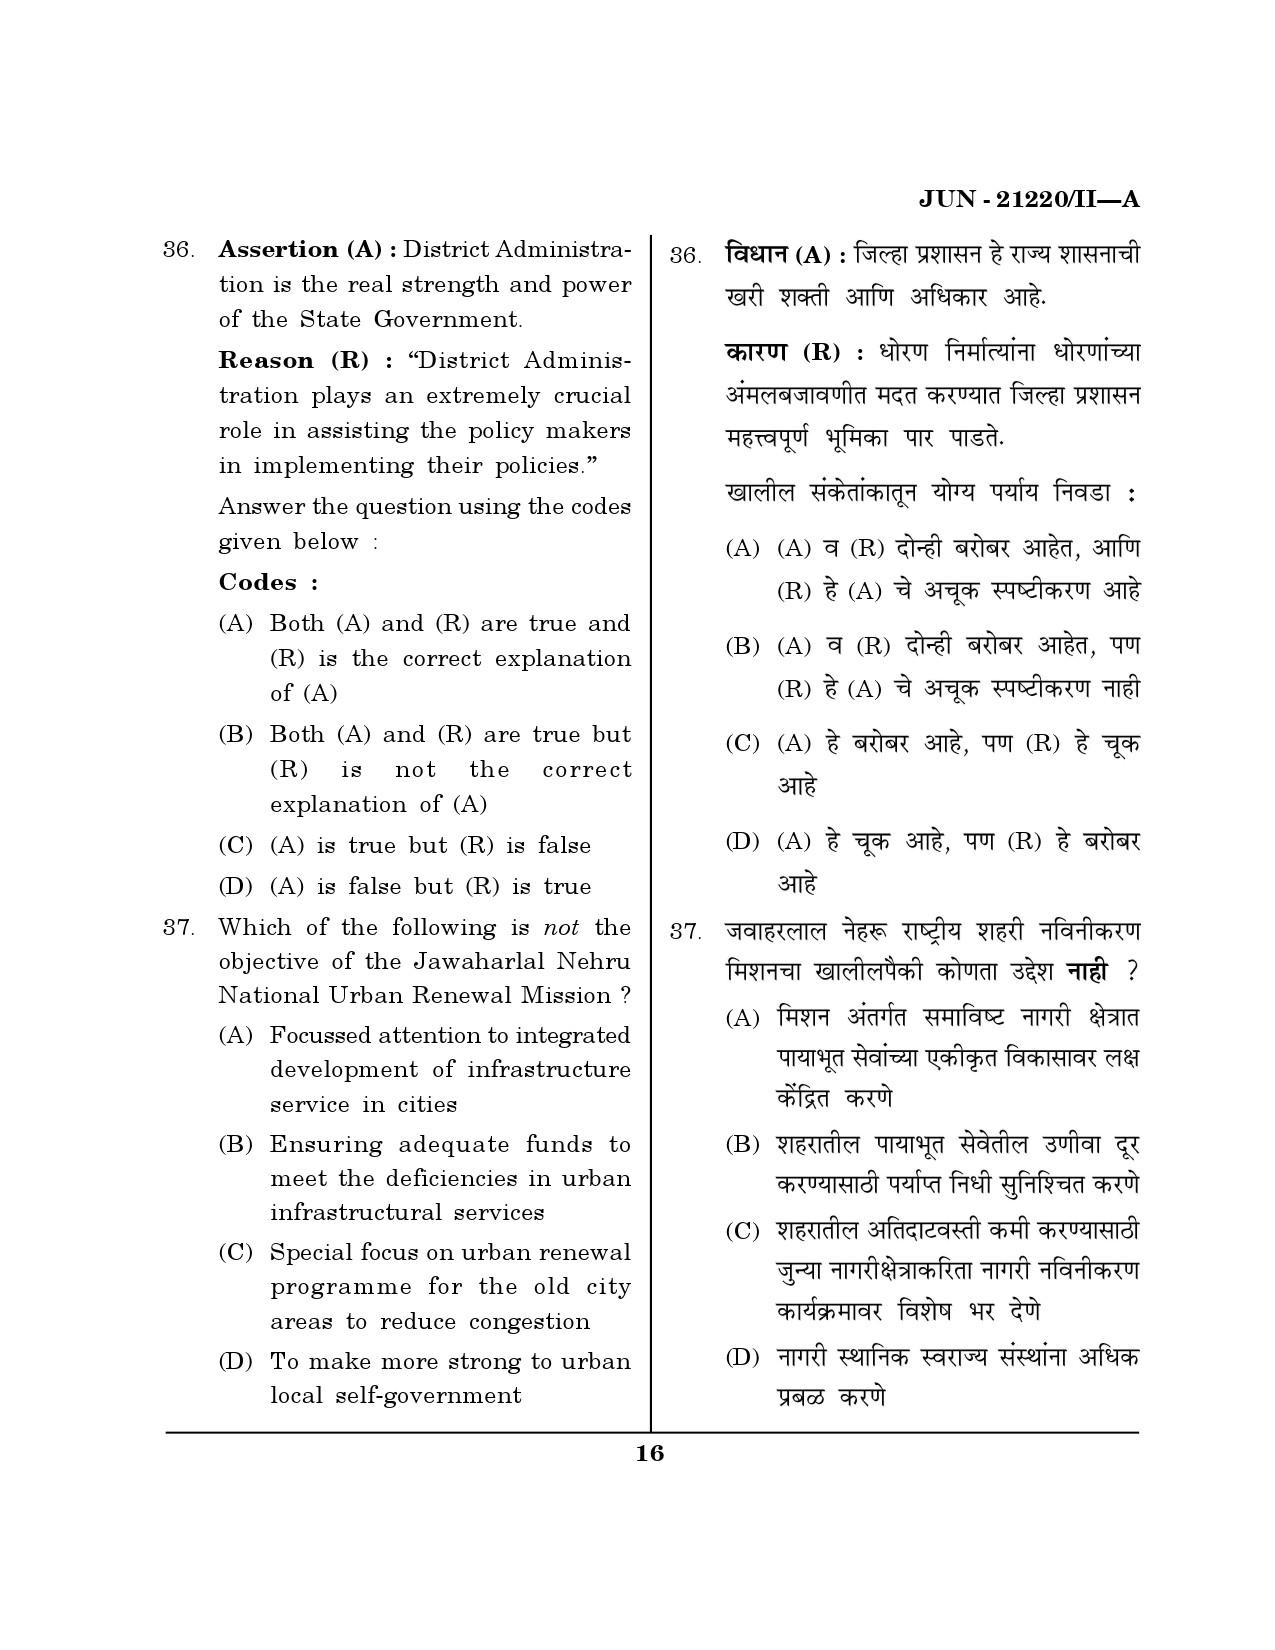 Maharashtra SET Public Administration Question Paper II June 2020 15